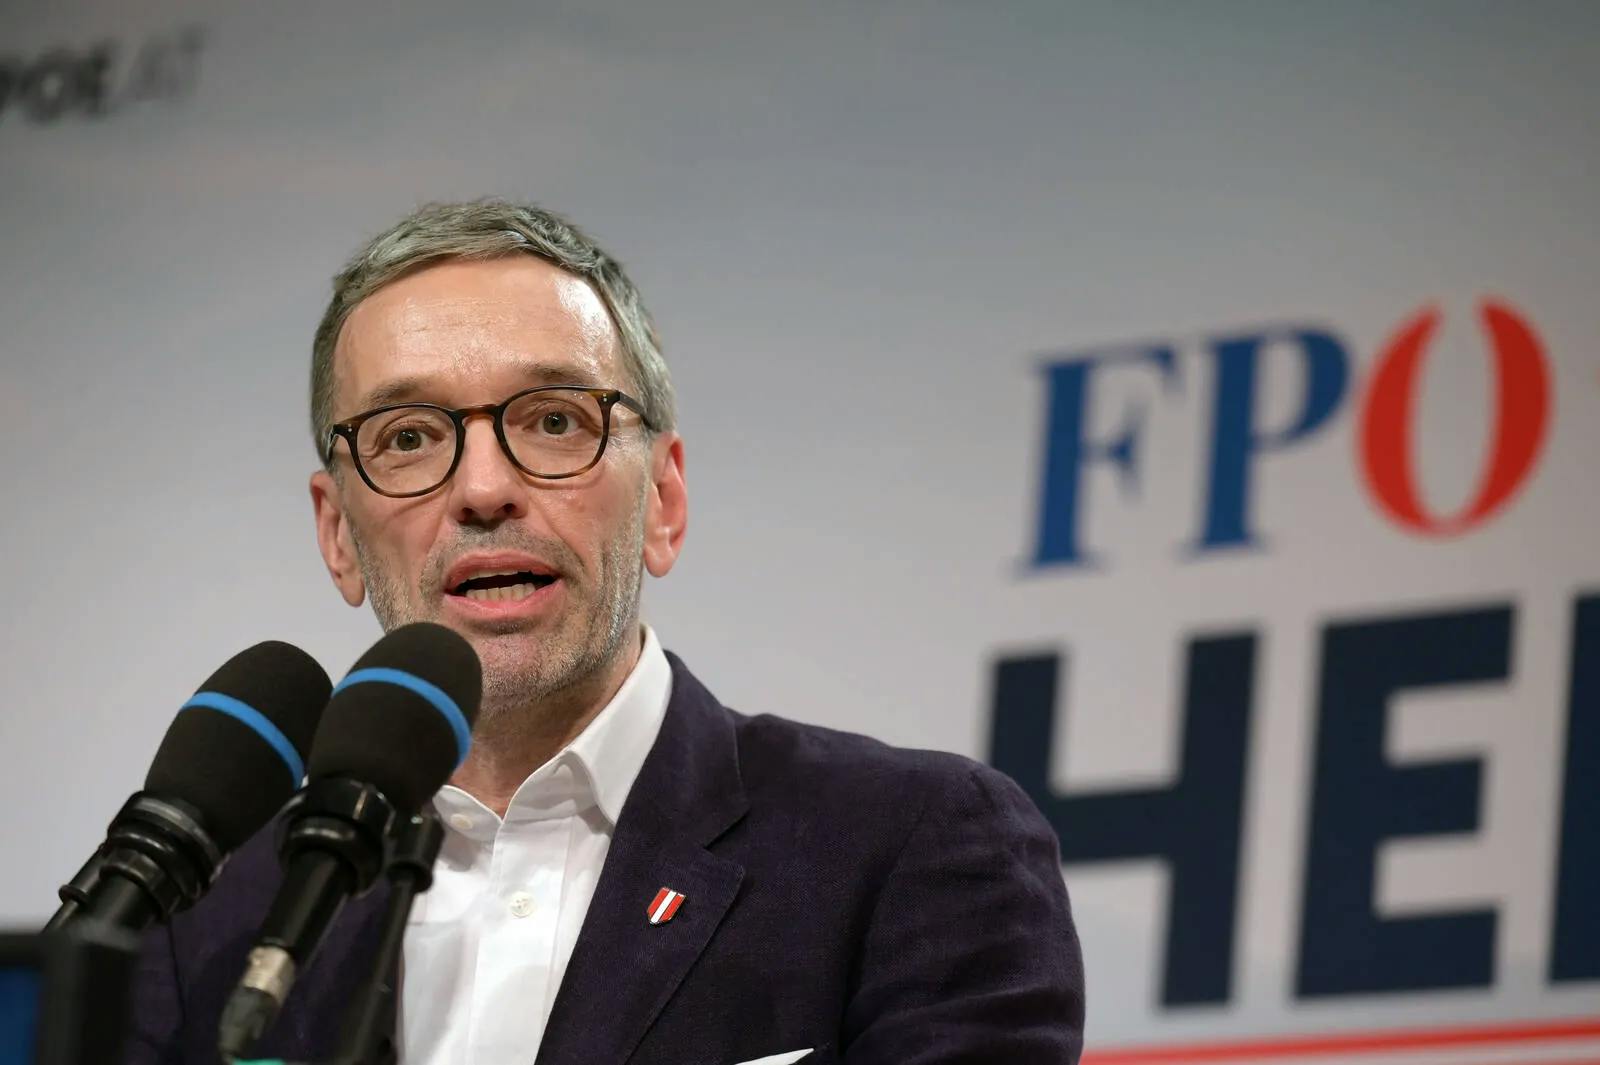 Beliebteste Partei bei Arbeitern: FPÖ klar vor SPÖ und ÖVP